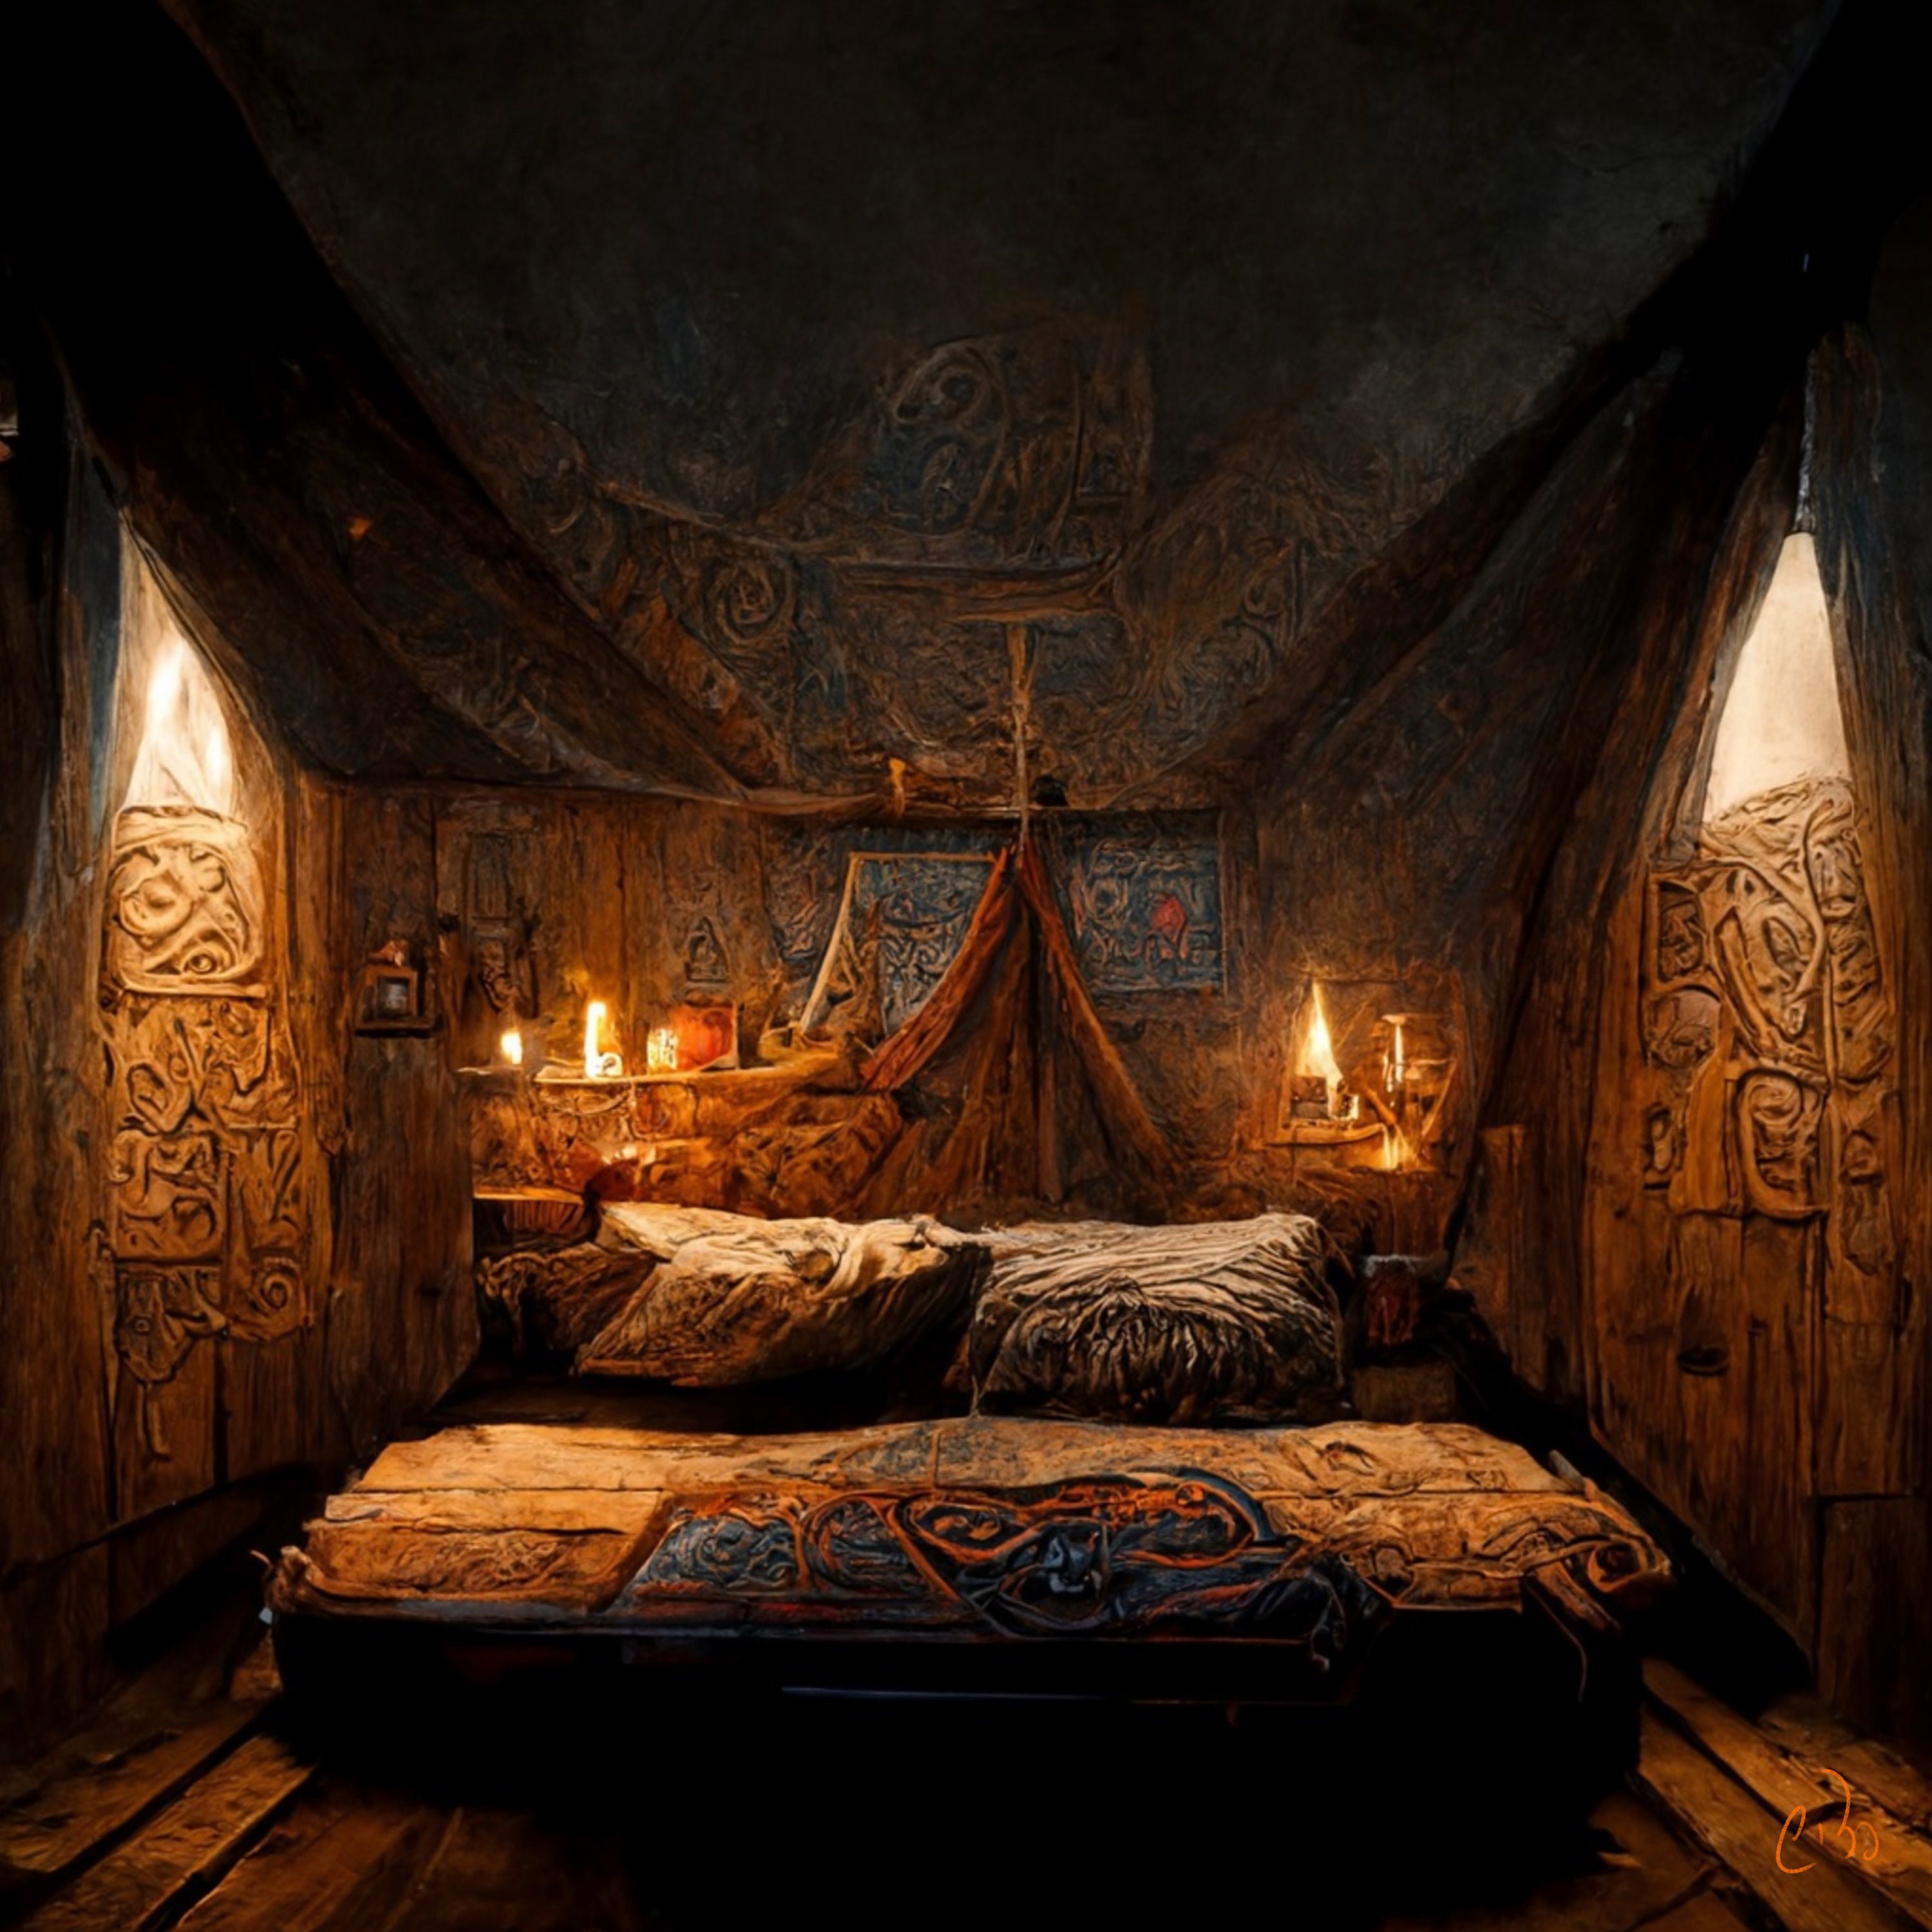 Vikings Bed - Etsy